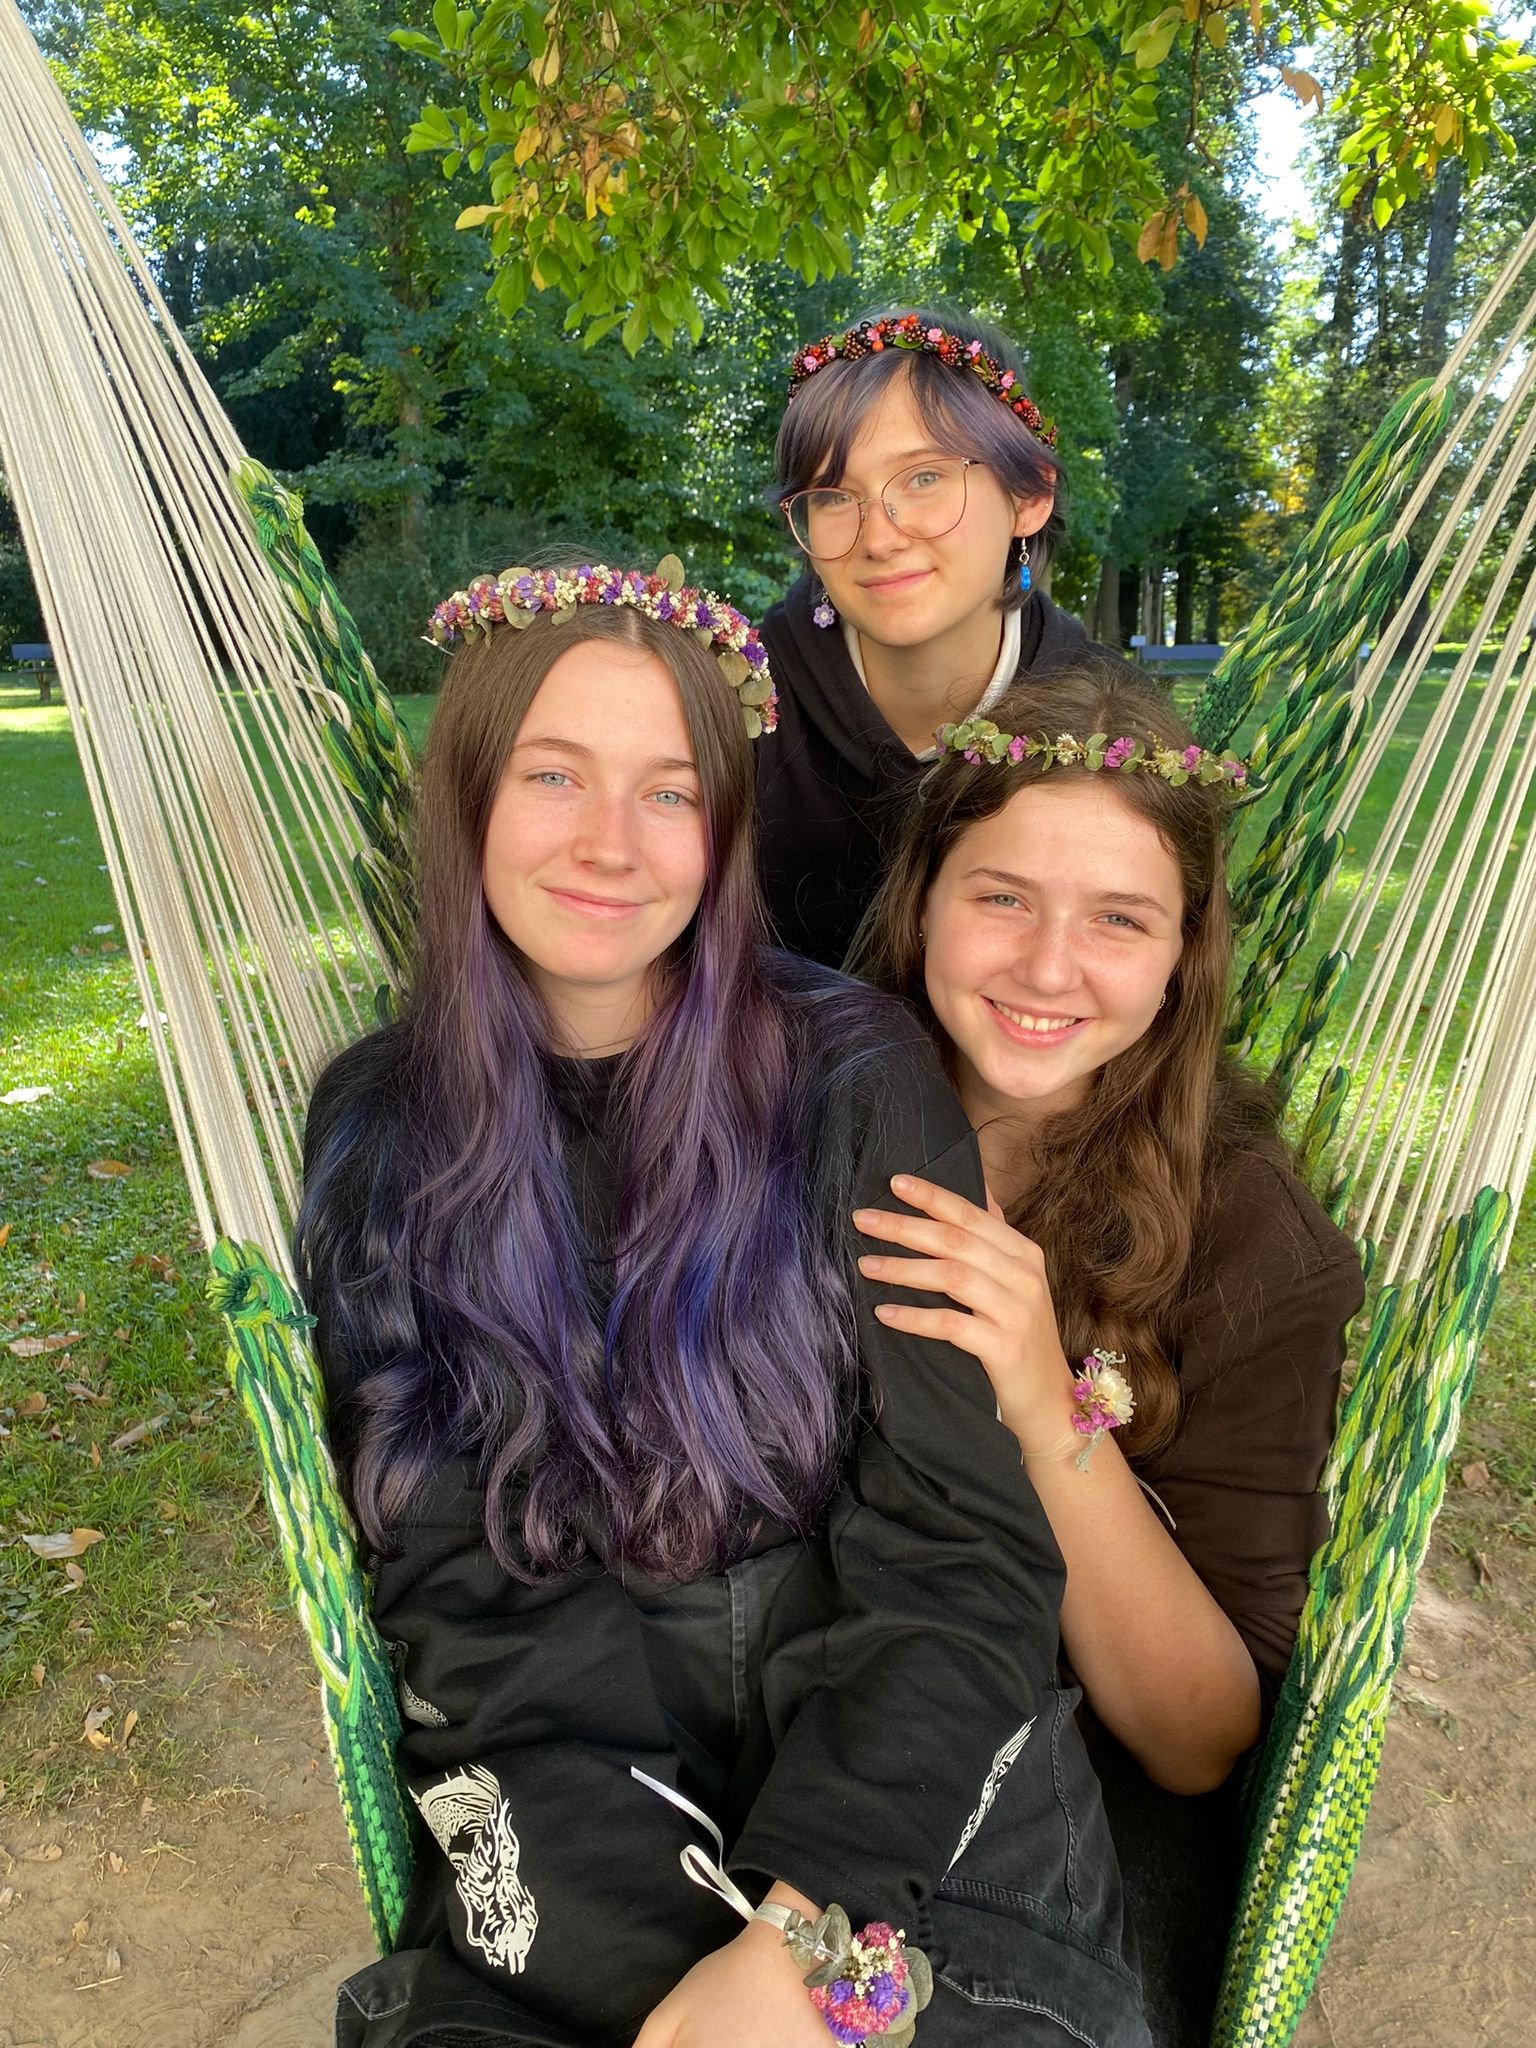 drei Mädchen mit Blumenkränzchen im Haar sitzen in einem Hängesessel